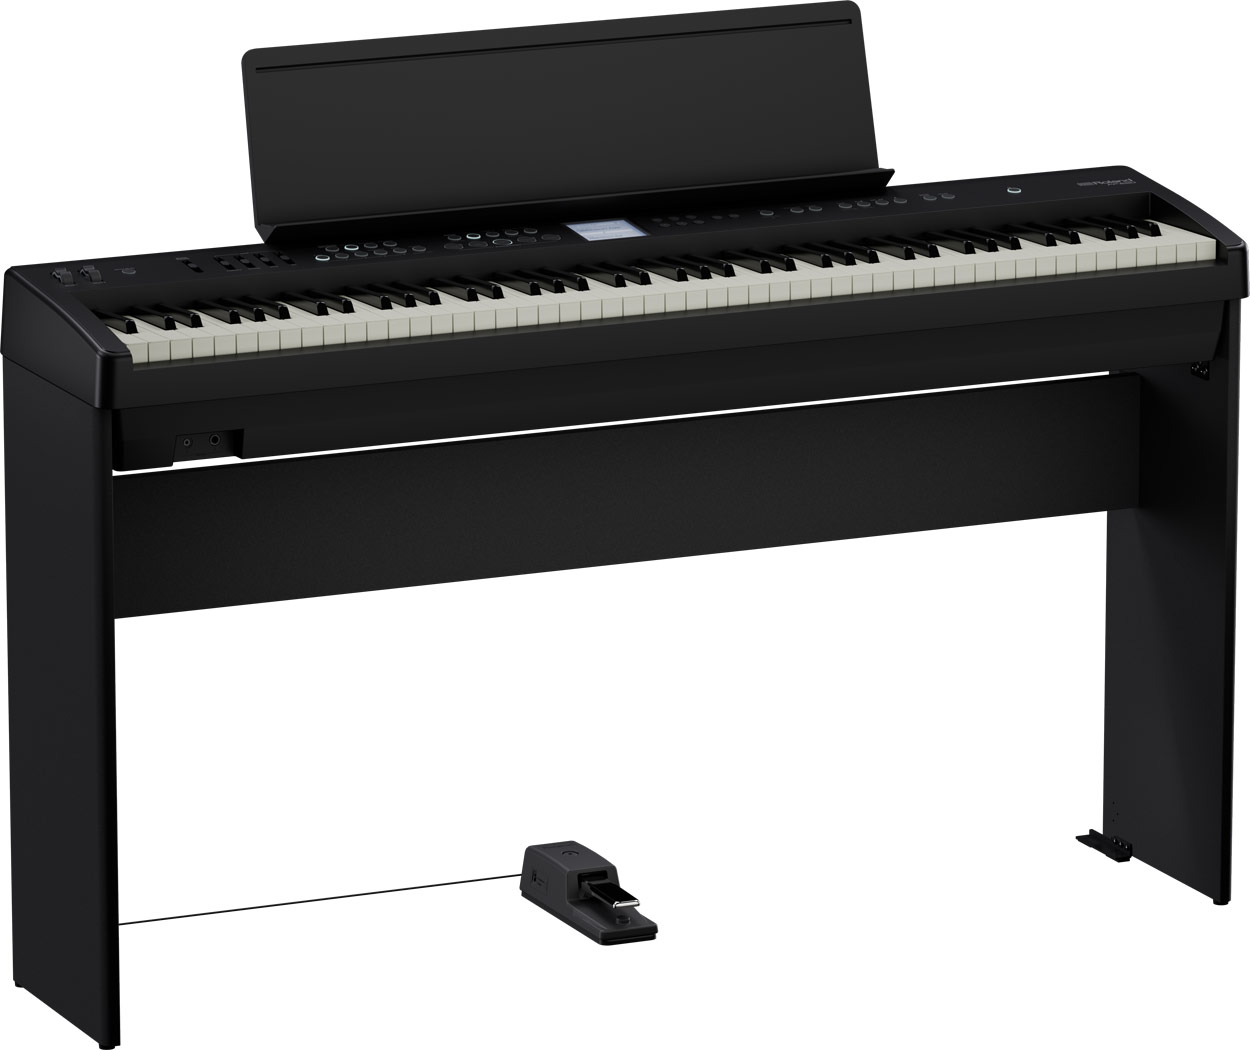 本格的なピアノとしての機能はもちろん、多彩な音色と自動伴奏、弾き語りにぴったりのボーカルエフェクトも備えた、カジュアルにピアノを楽しむための多機能ピアノが1/28(土)に発売！ グランドピアノさながらの弾き心地を叶える「スーパーナチュラル・ピアノ音源」と「PHA-4スタンダード鍵盤」に加え、ローラン […]